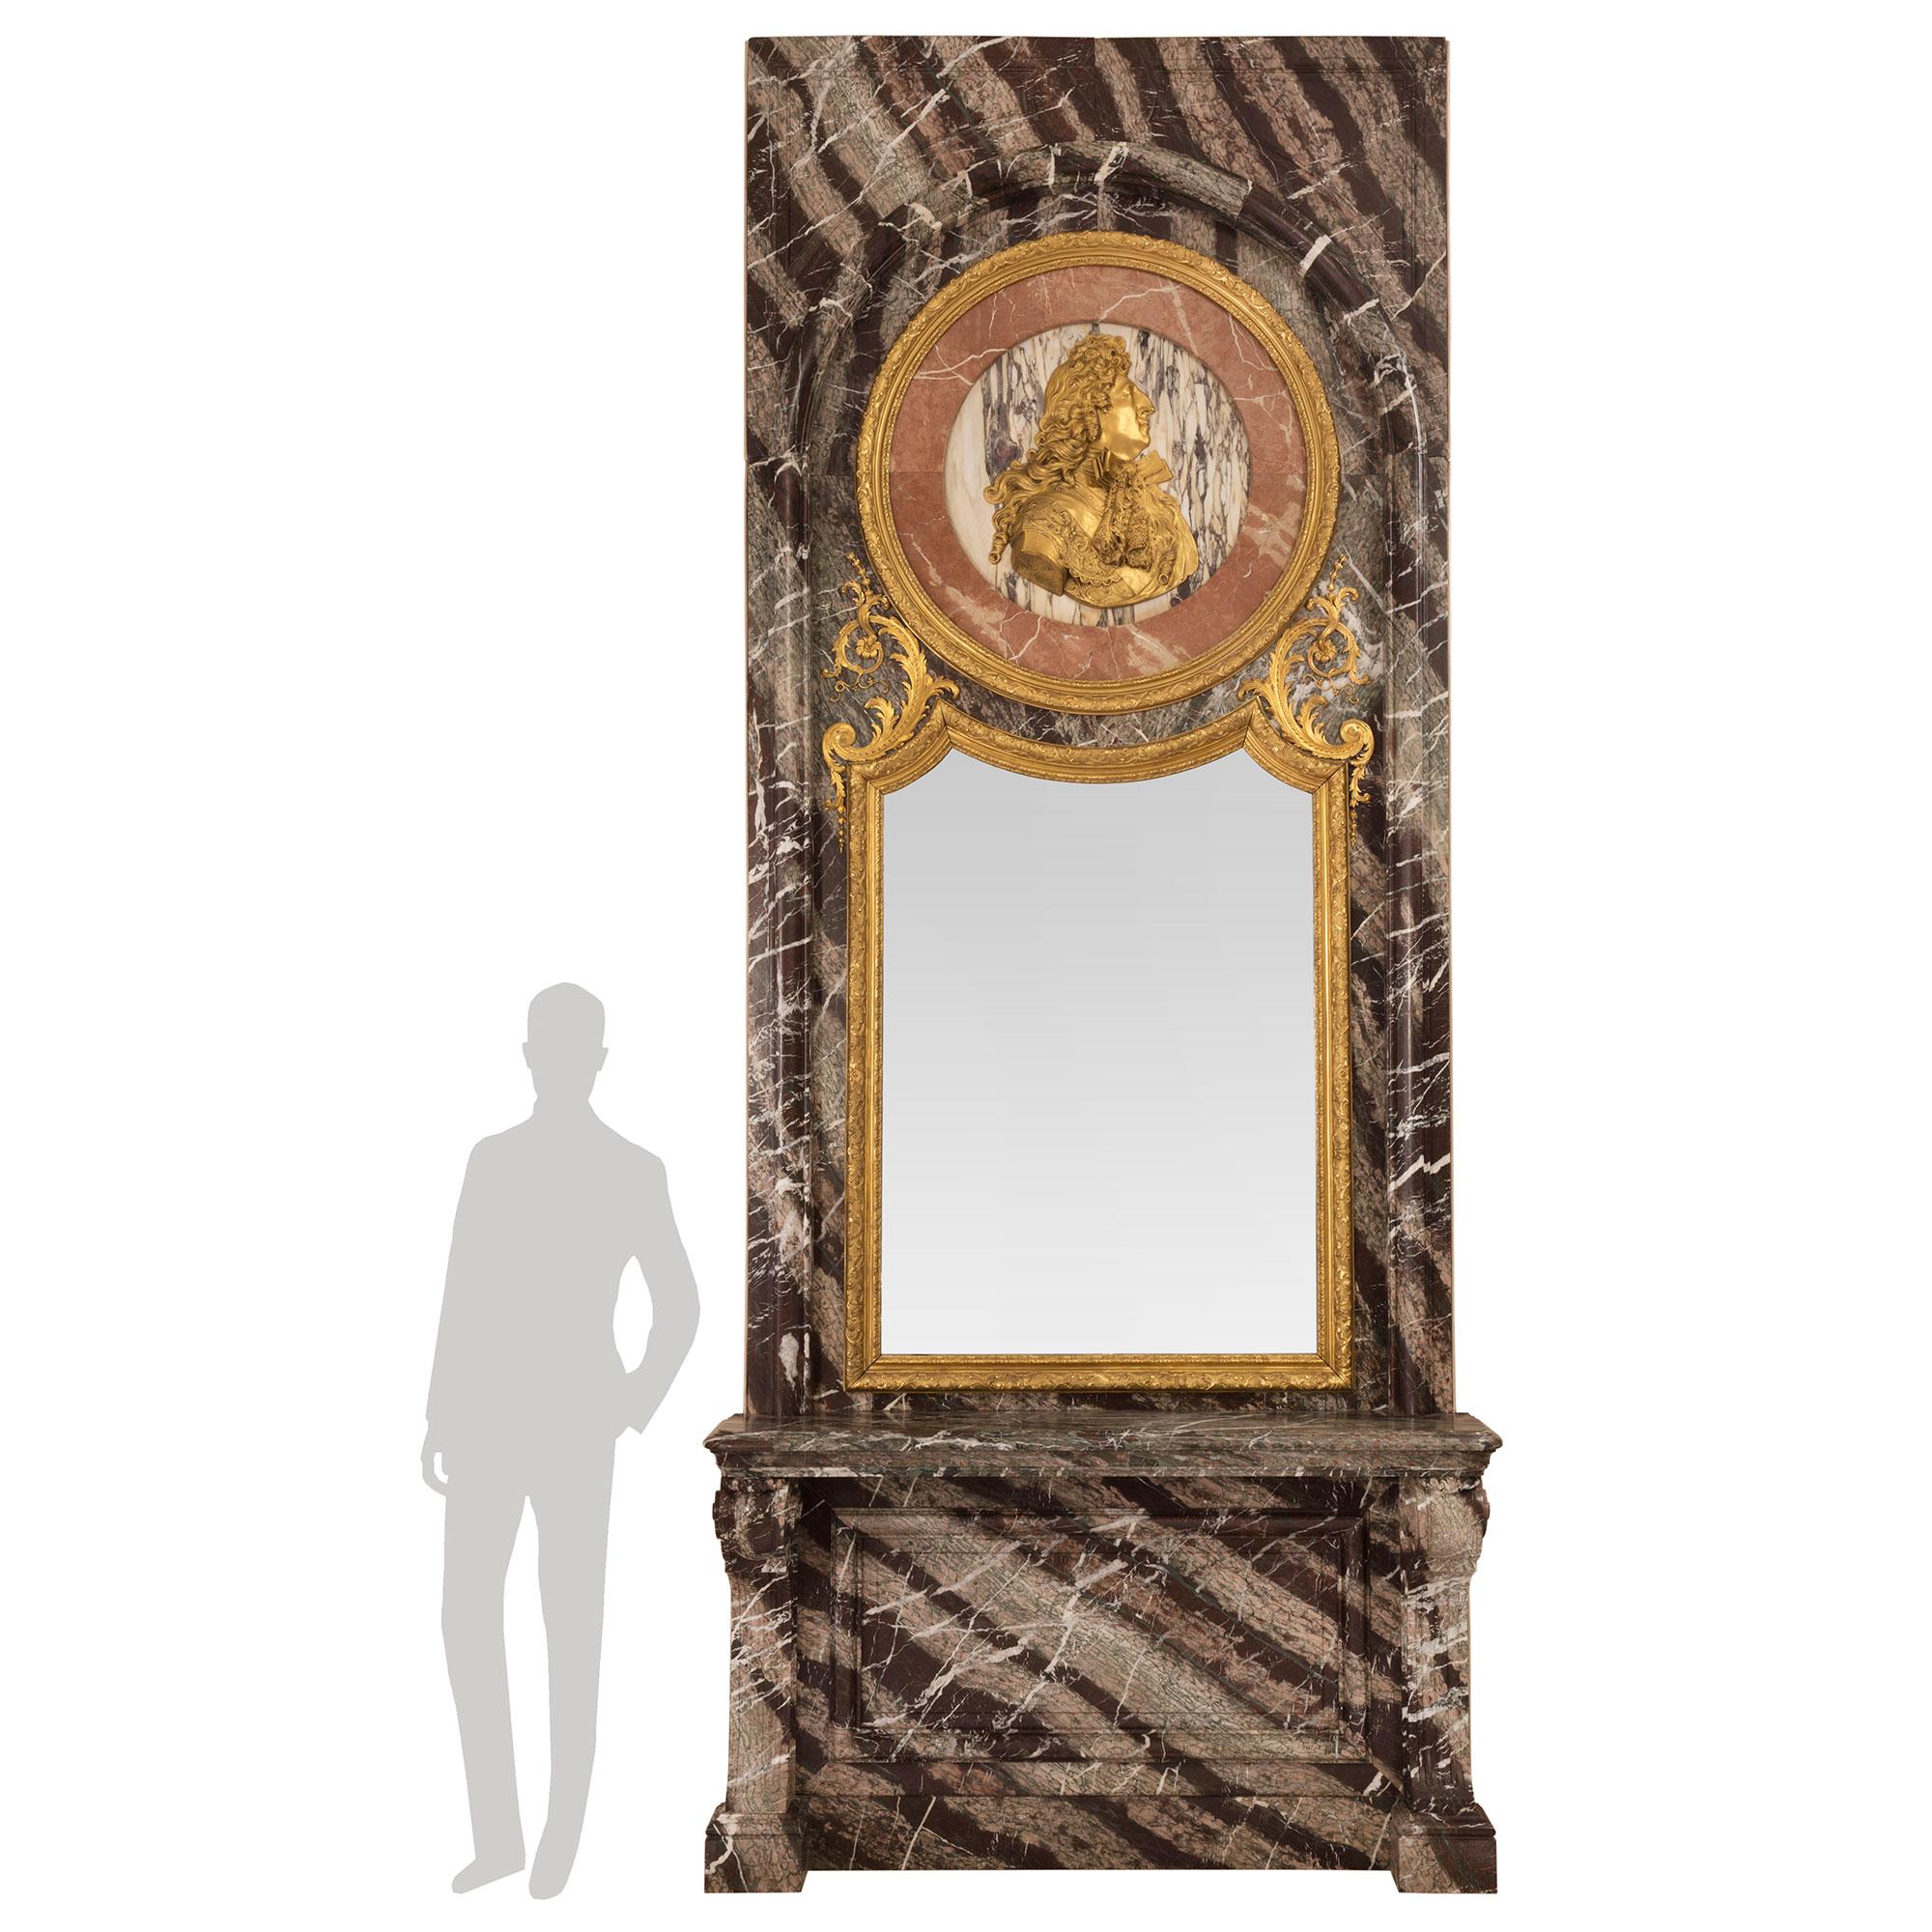 Magnifique console de style Louis XIV du milieu du XIXe siècle en bronze doré, bois doré, Campan Rubané, Rose Vif et Fleur de Pêcher et miroir assorti. D'une hauteur de plus de douze pieds, cette console des plus impressionnantes est soutenue par